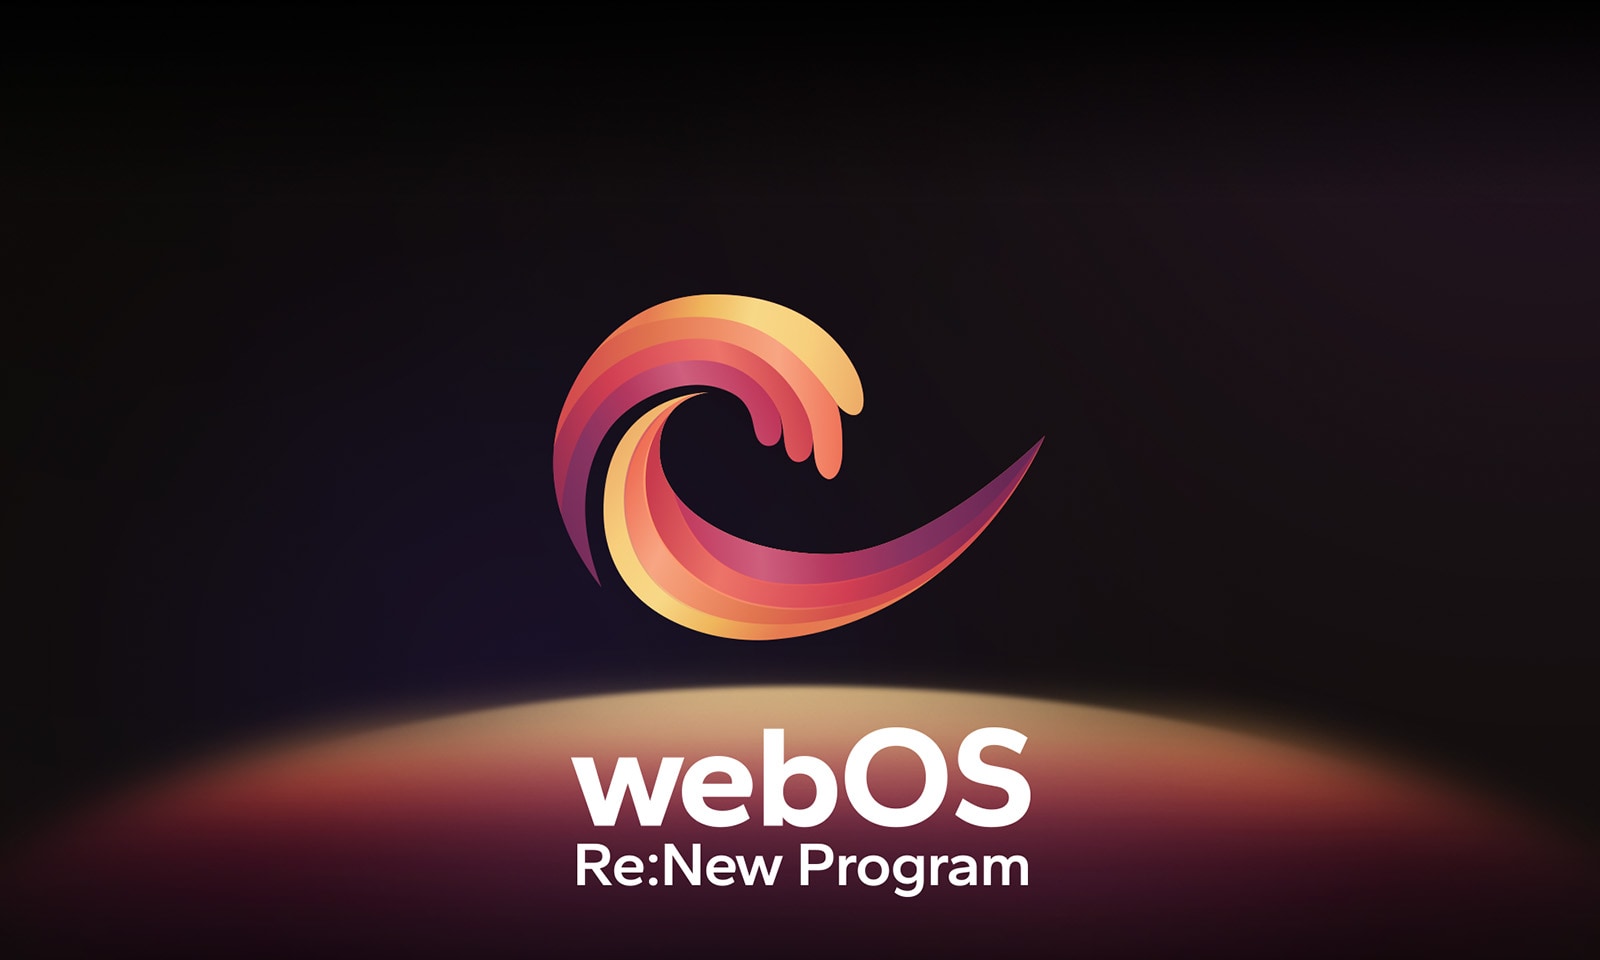 يحوم شعار webOS في المنتصف على خلفية سوداء، والمساحة أدناه مضاءة بألوان الشعار الأحمر والبرتقالي والأصفر. يتم عرض "webOS Re: New Program" أسفل الشعار.